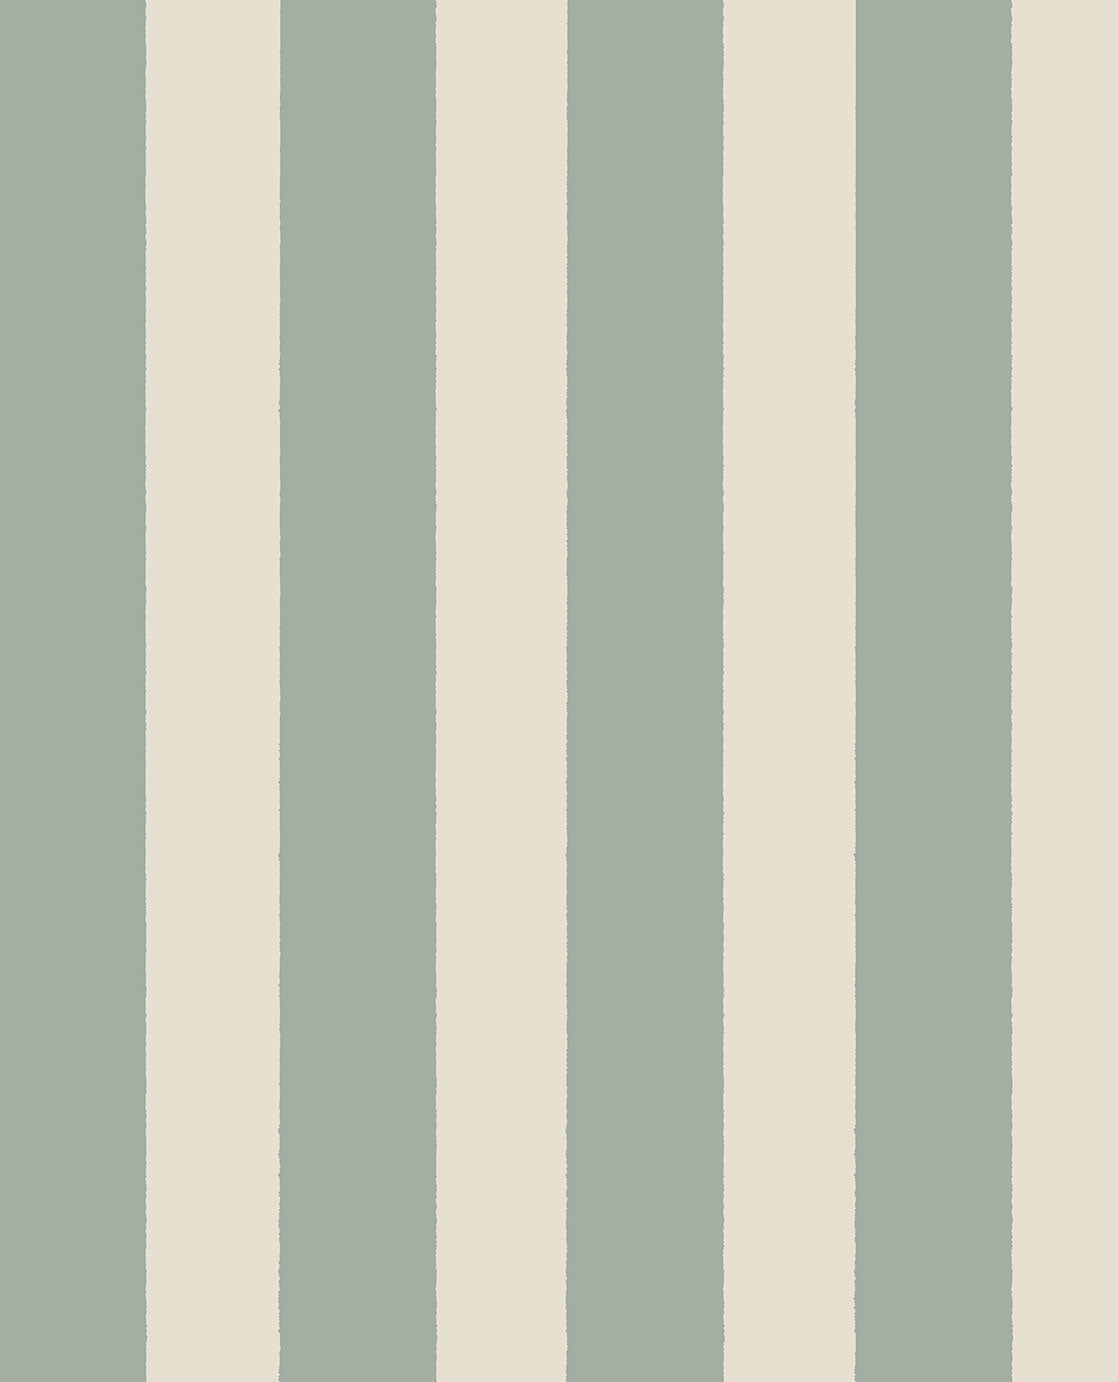 Explore Stripe wallpaper